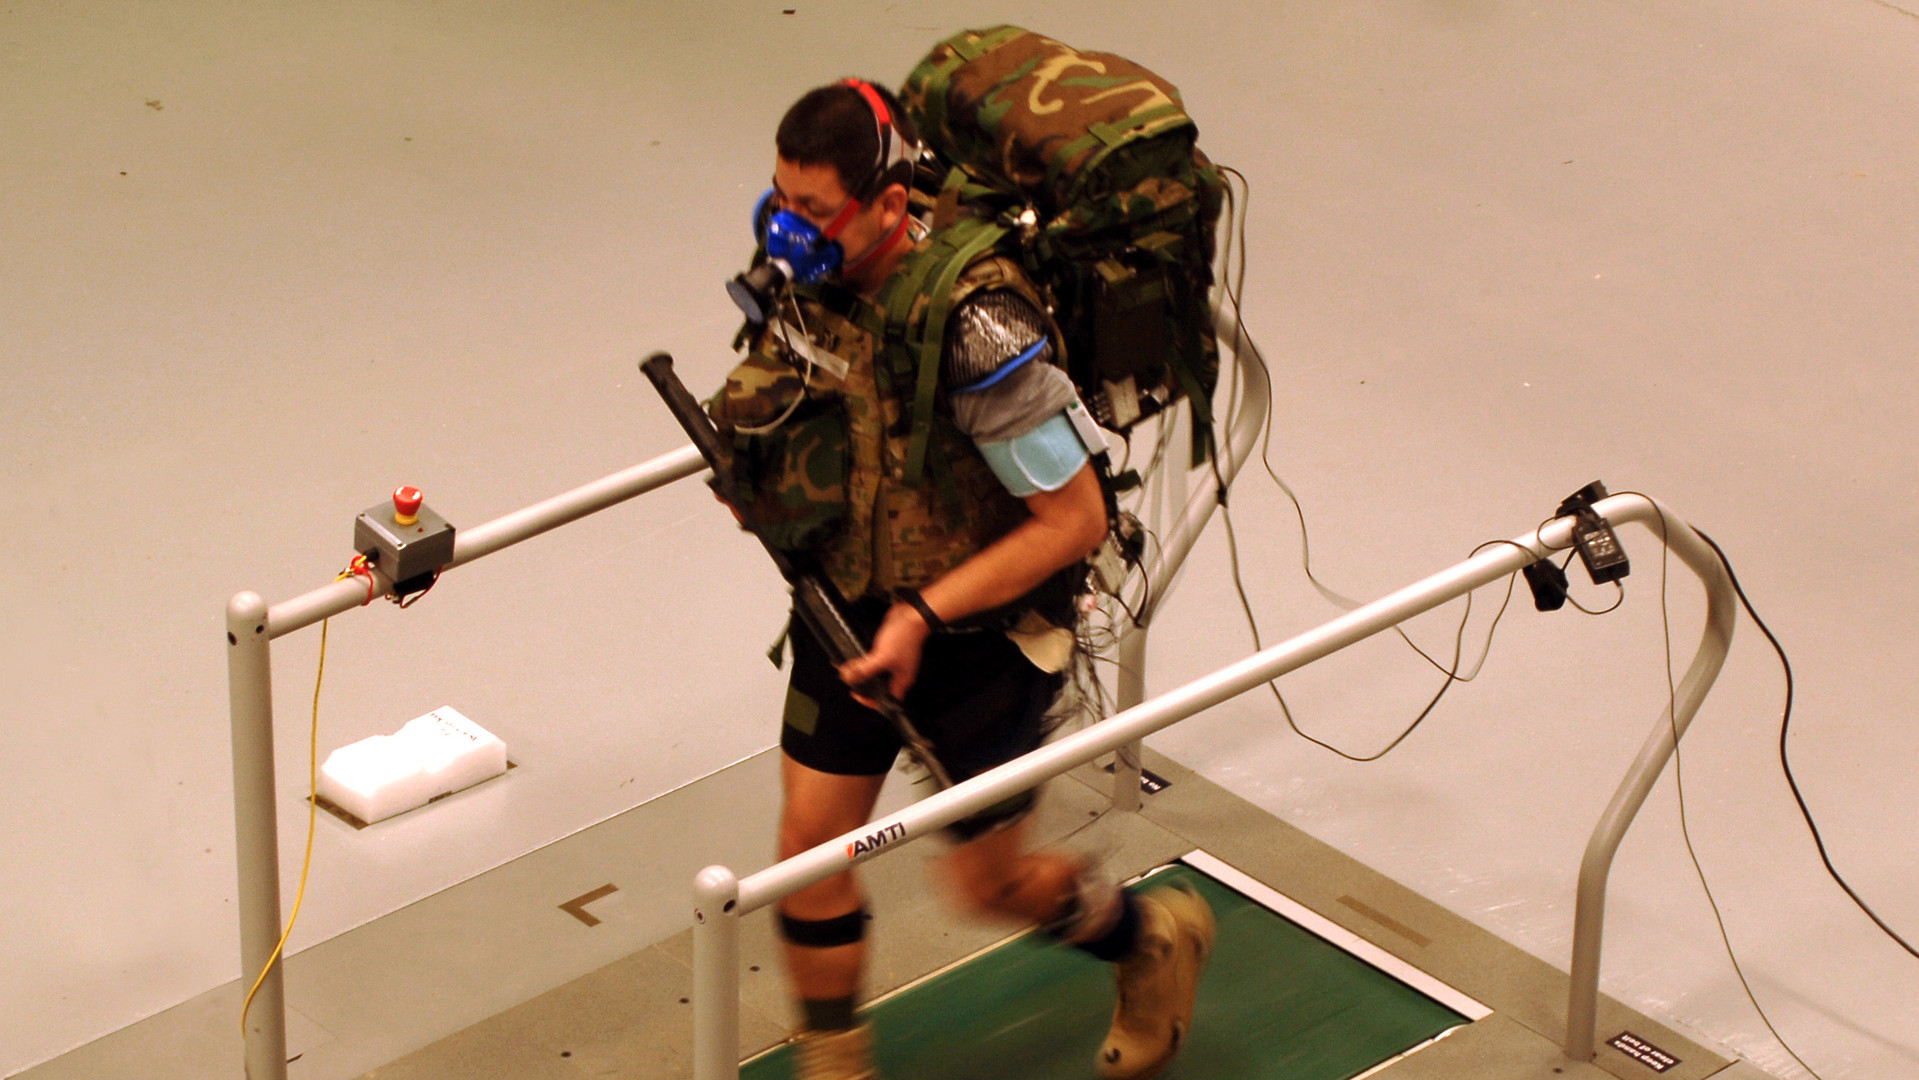 Экипированный прототипом костюма военнослужащий шагал по беговой дорожке с рюкзаком массой 27,6 килограмма за плечами